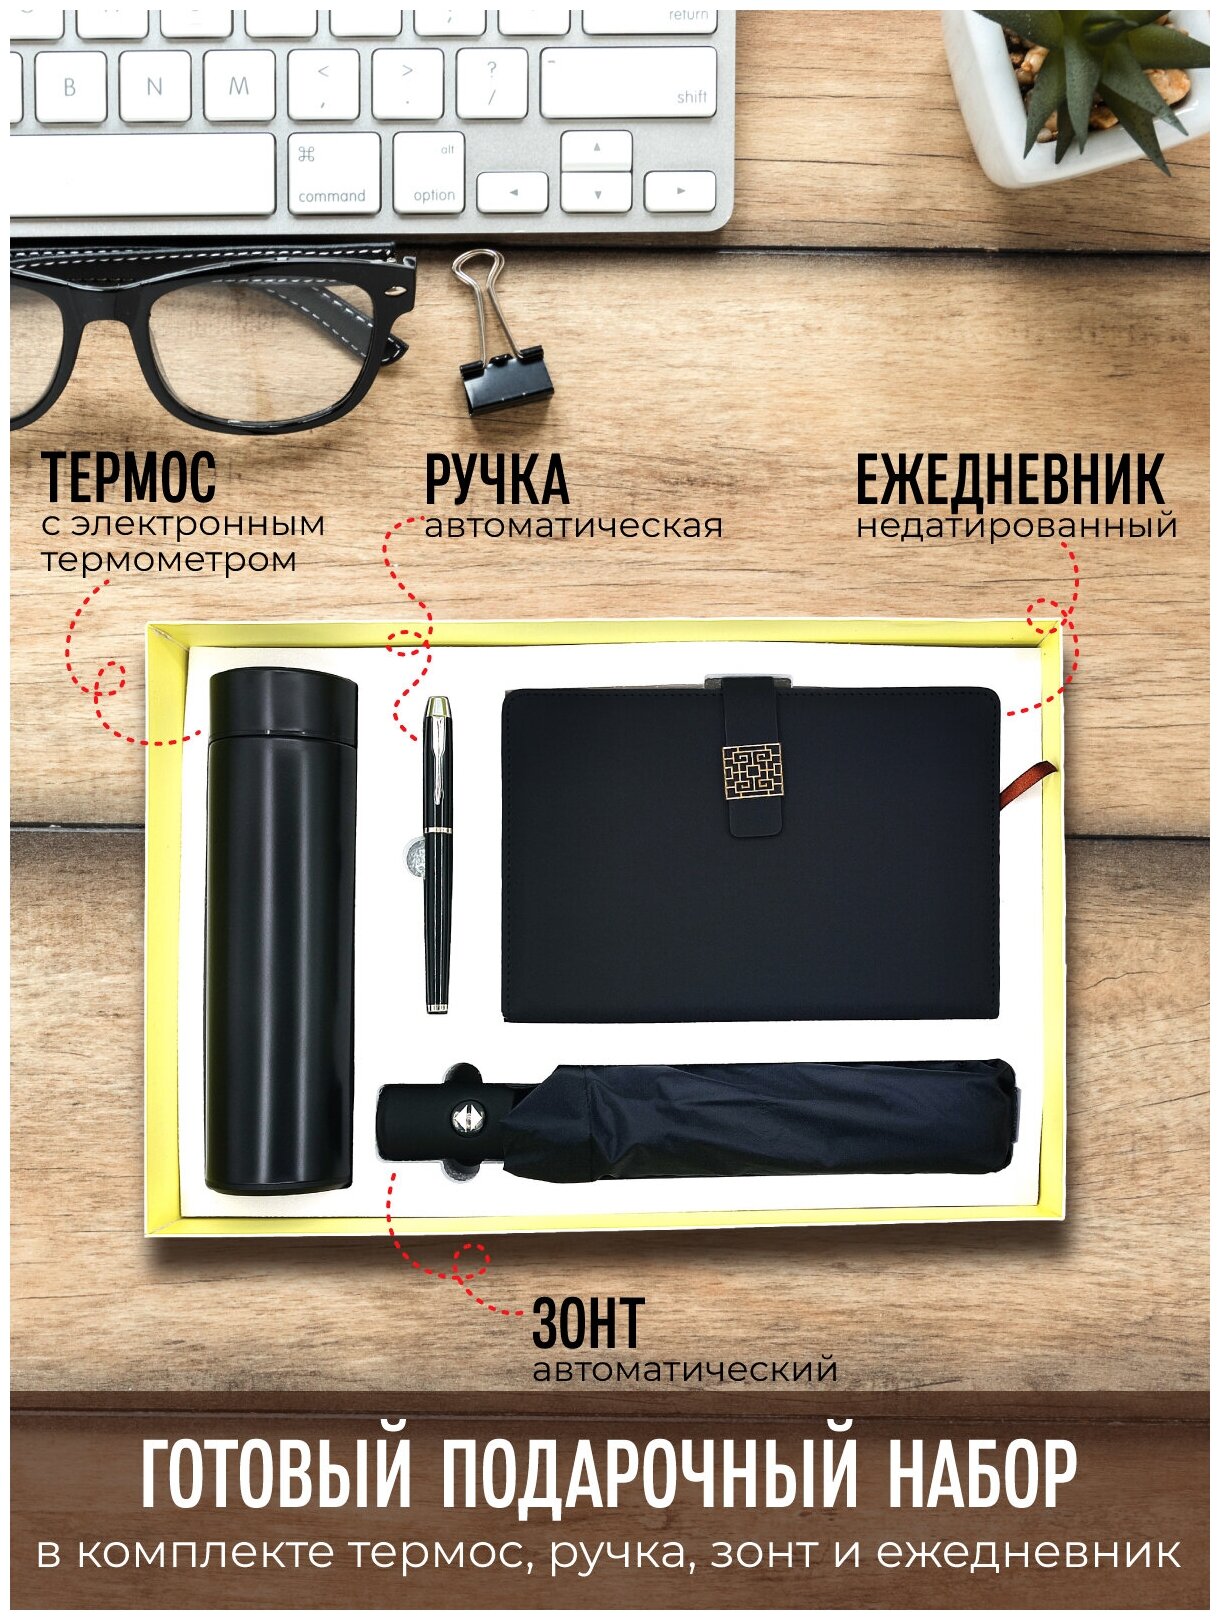 Подарочный набор термос с электронным термометром + автоматический зонт + ежедневник + ручка / цвет черный / Подарок для мужчины, женщины